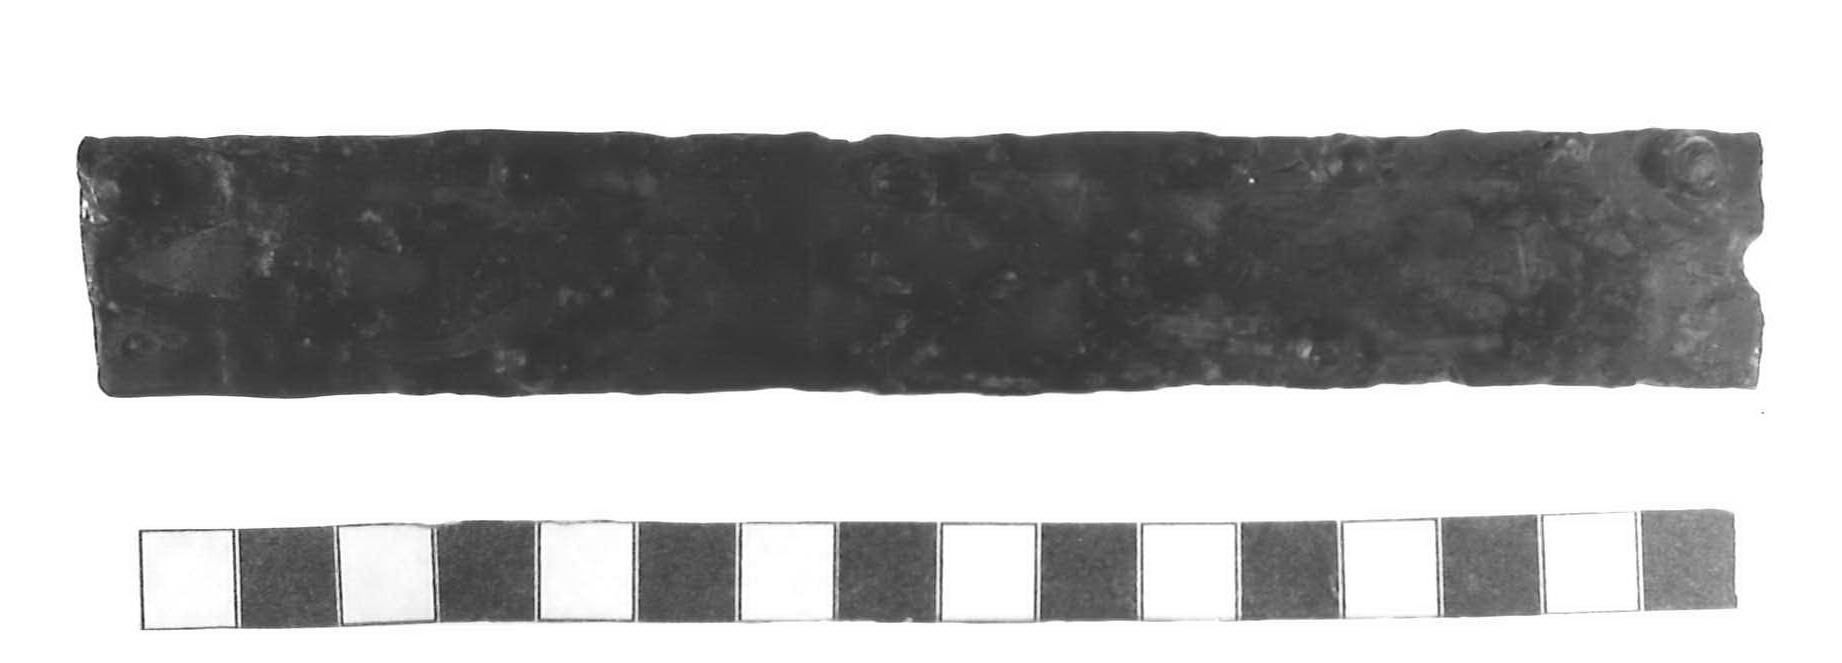 placca di rivestimento - Piceno III (secc. VII-VI a.C)